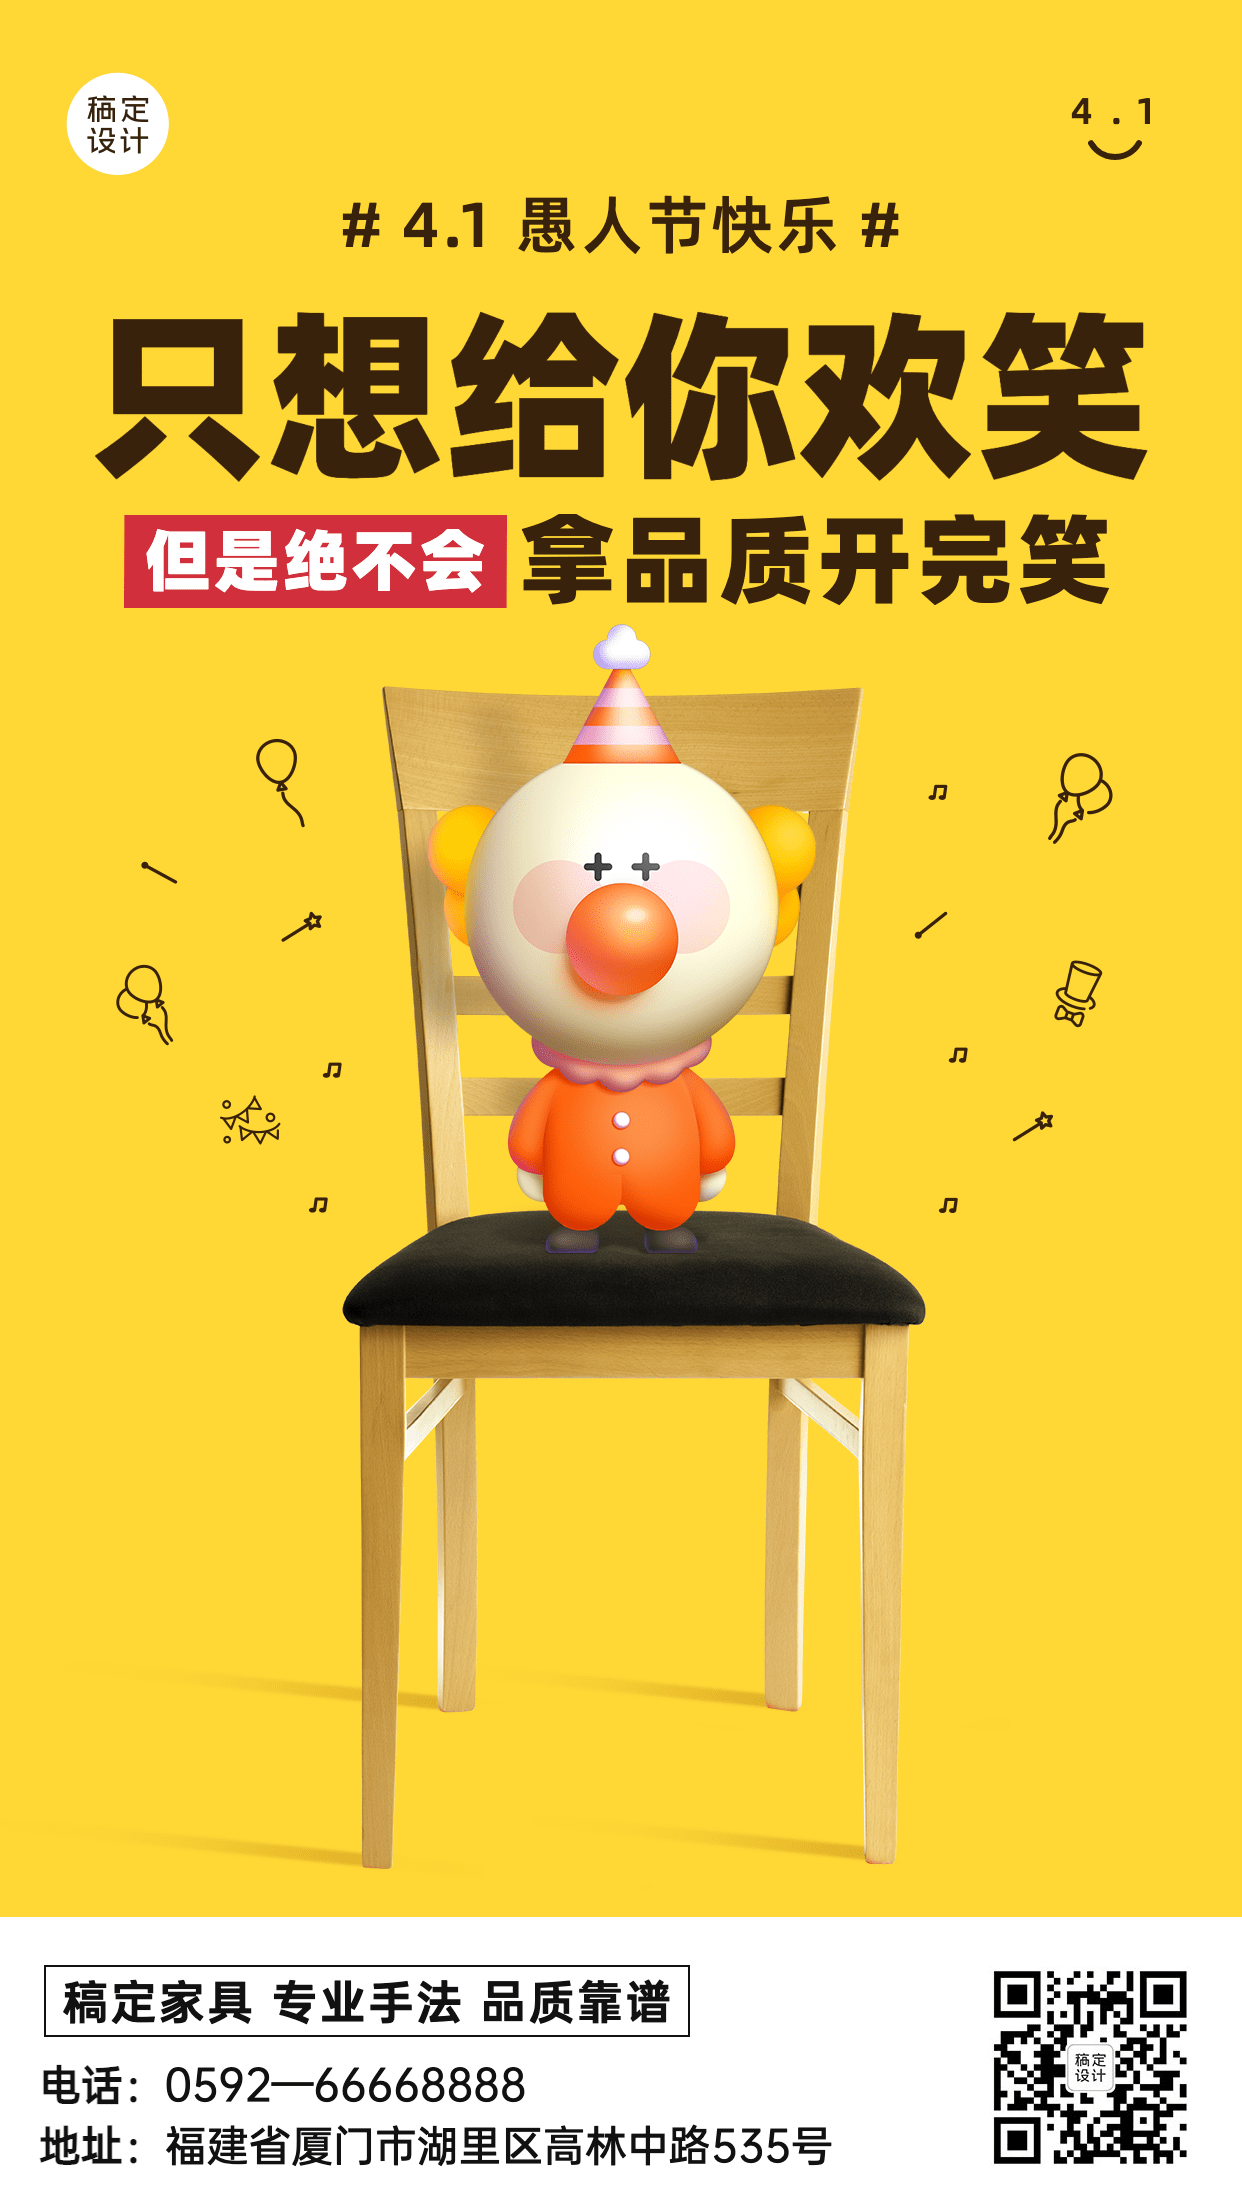 4.1愚人节节日活动产品促销手机海报